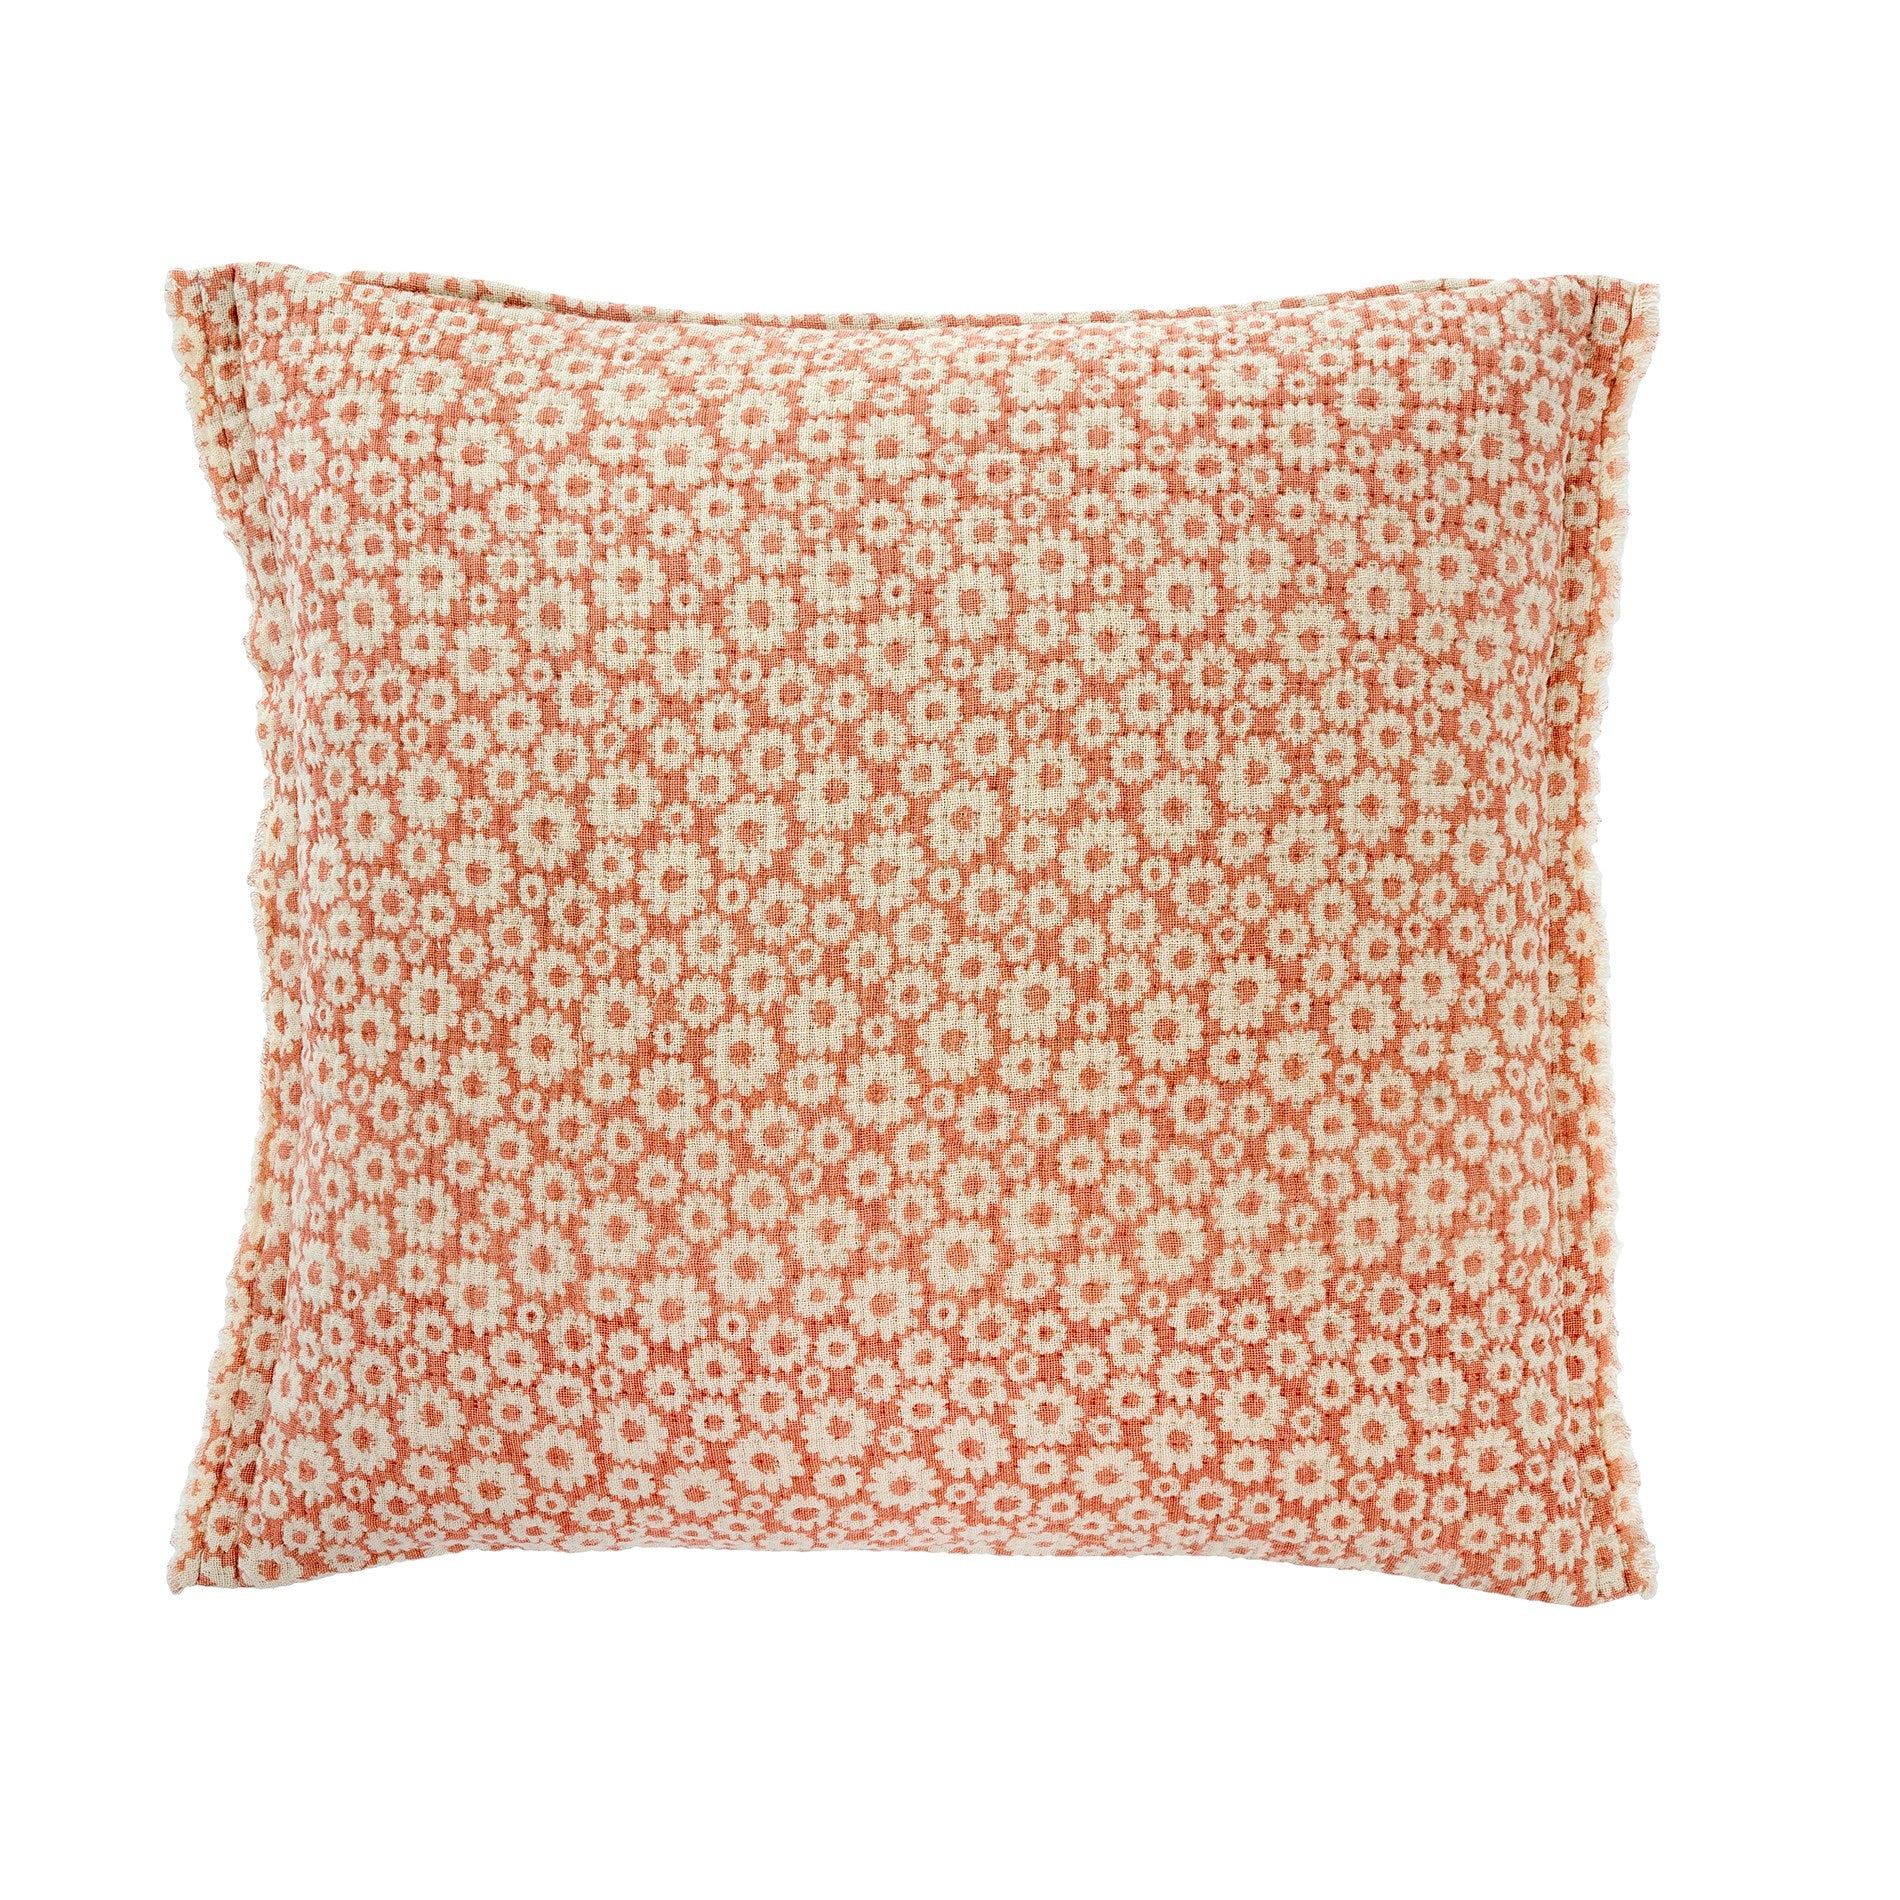 Indaba Ditsy Cushion 1-4335 Coral